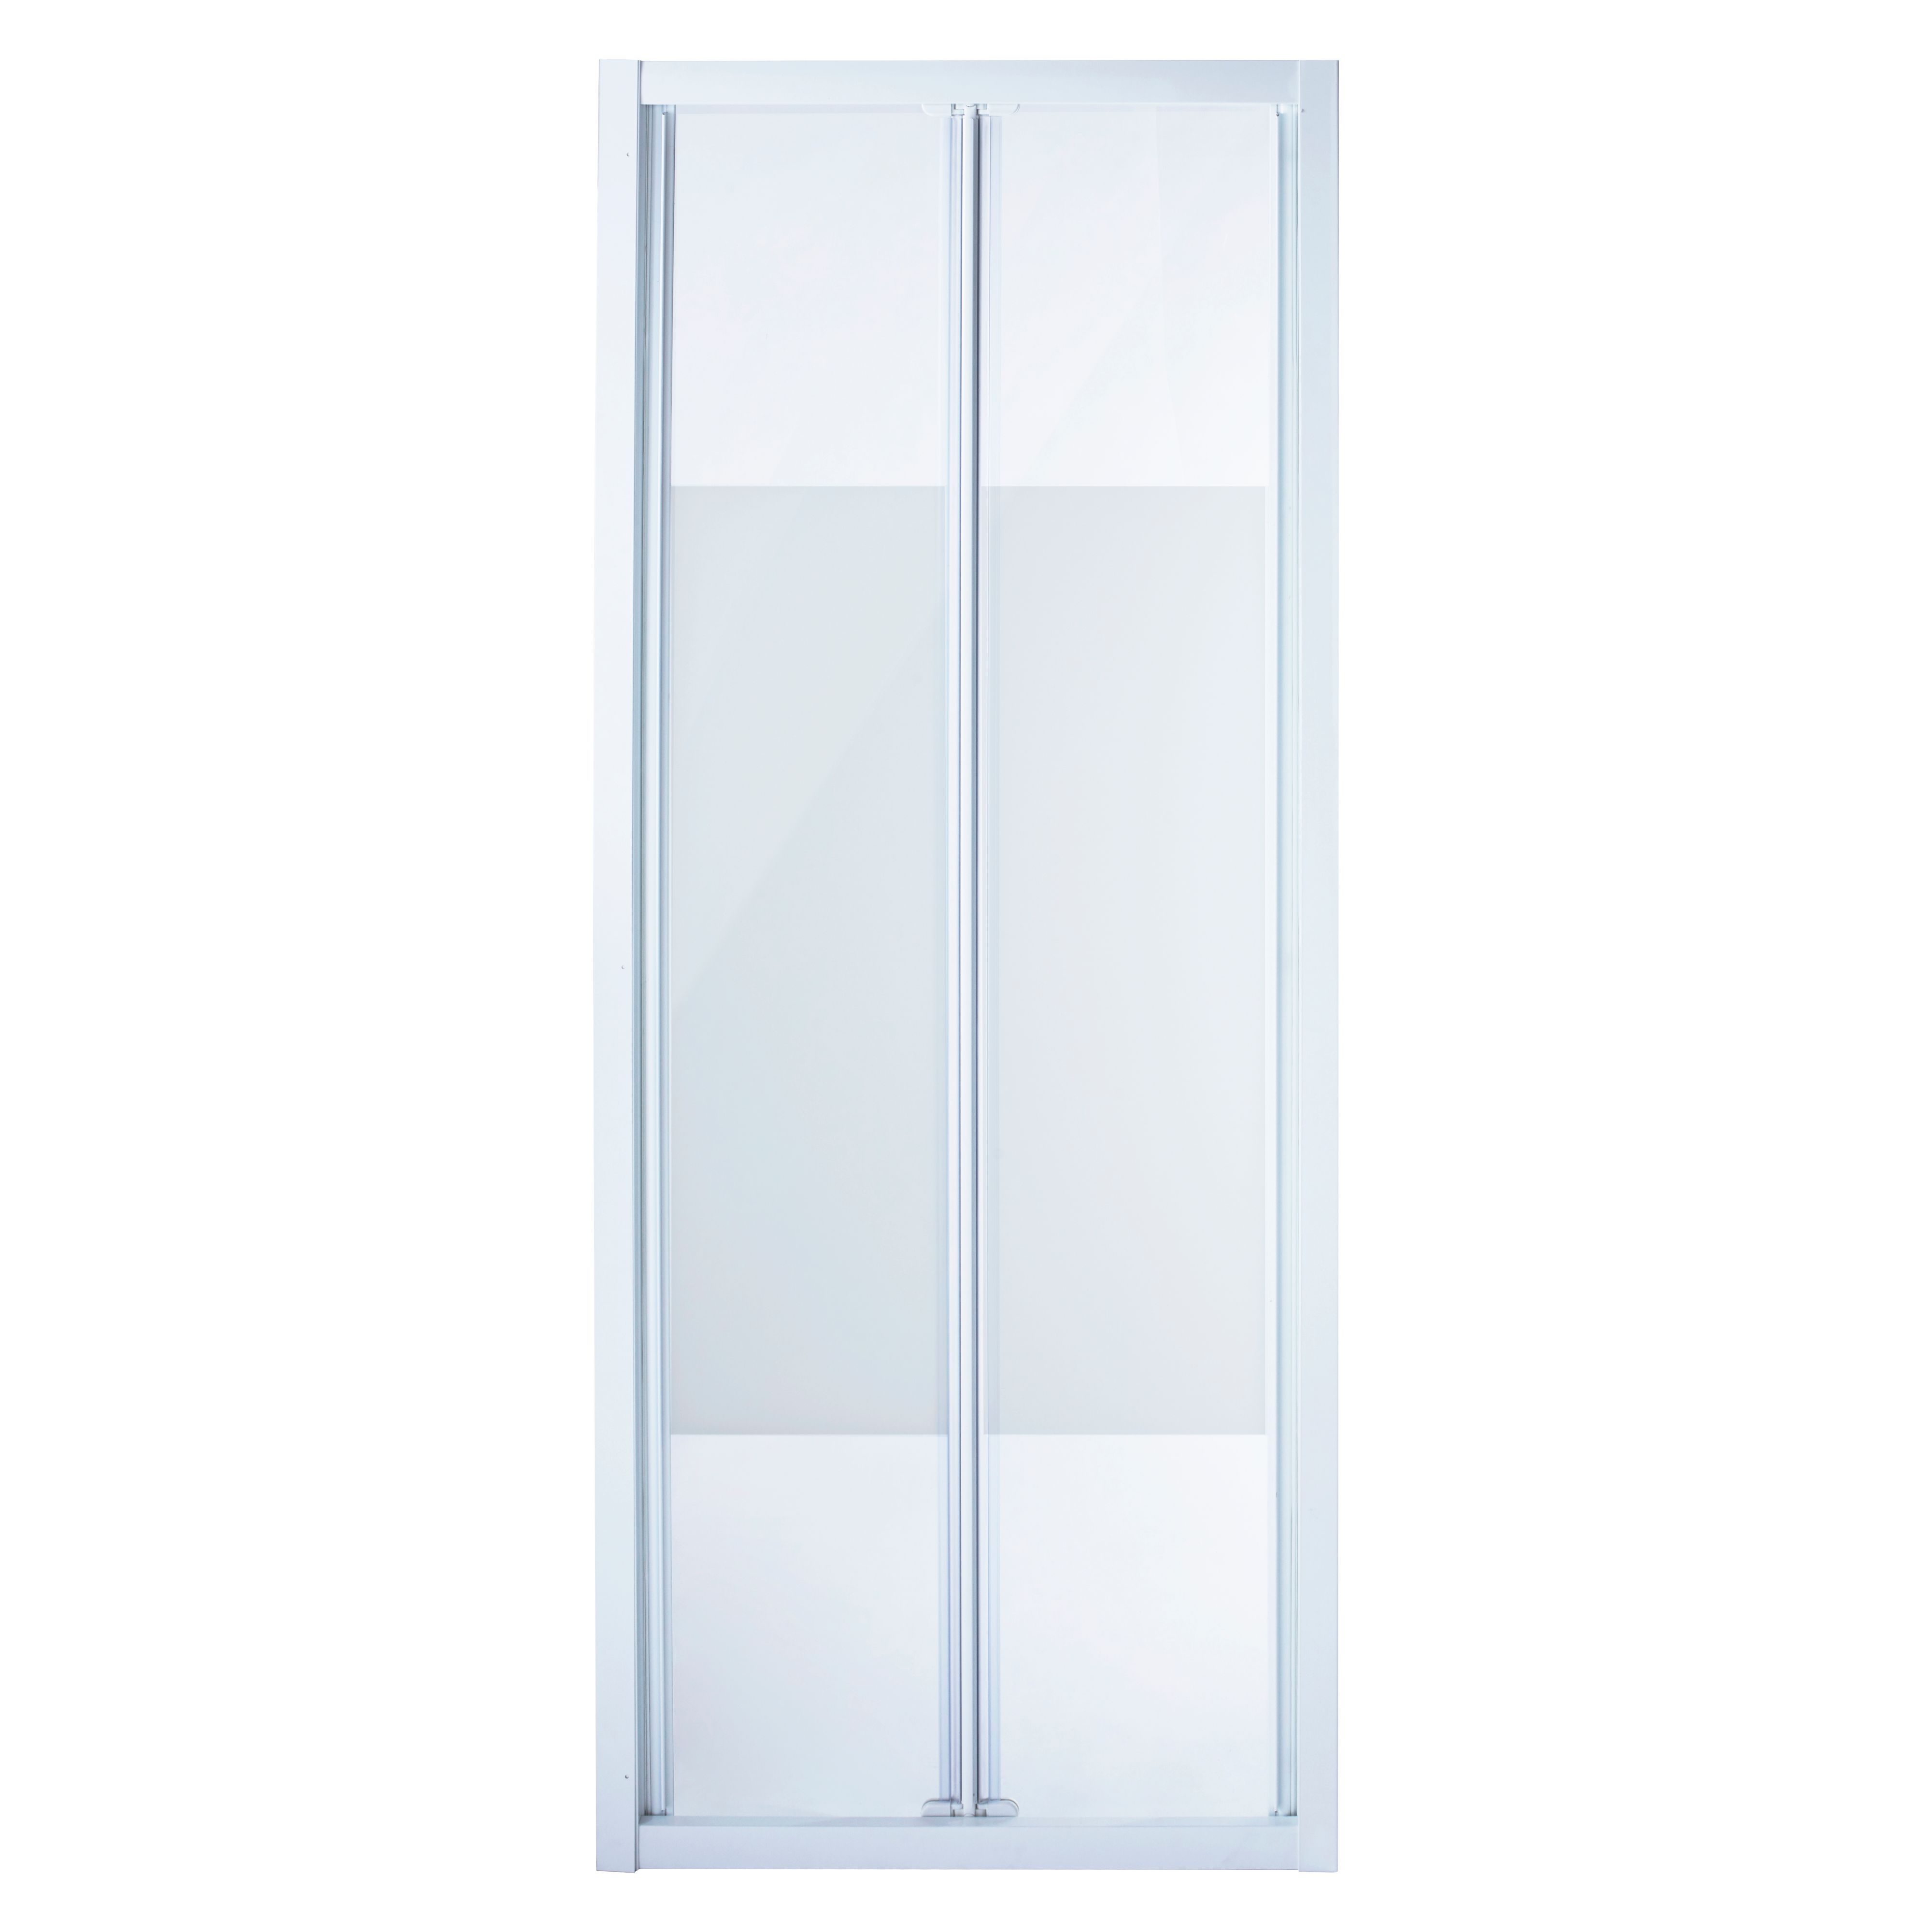 Cooke & Lewis Onega Frosted Bi-fold Shower Door (H)190cm (W)76cm